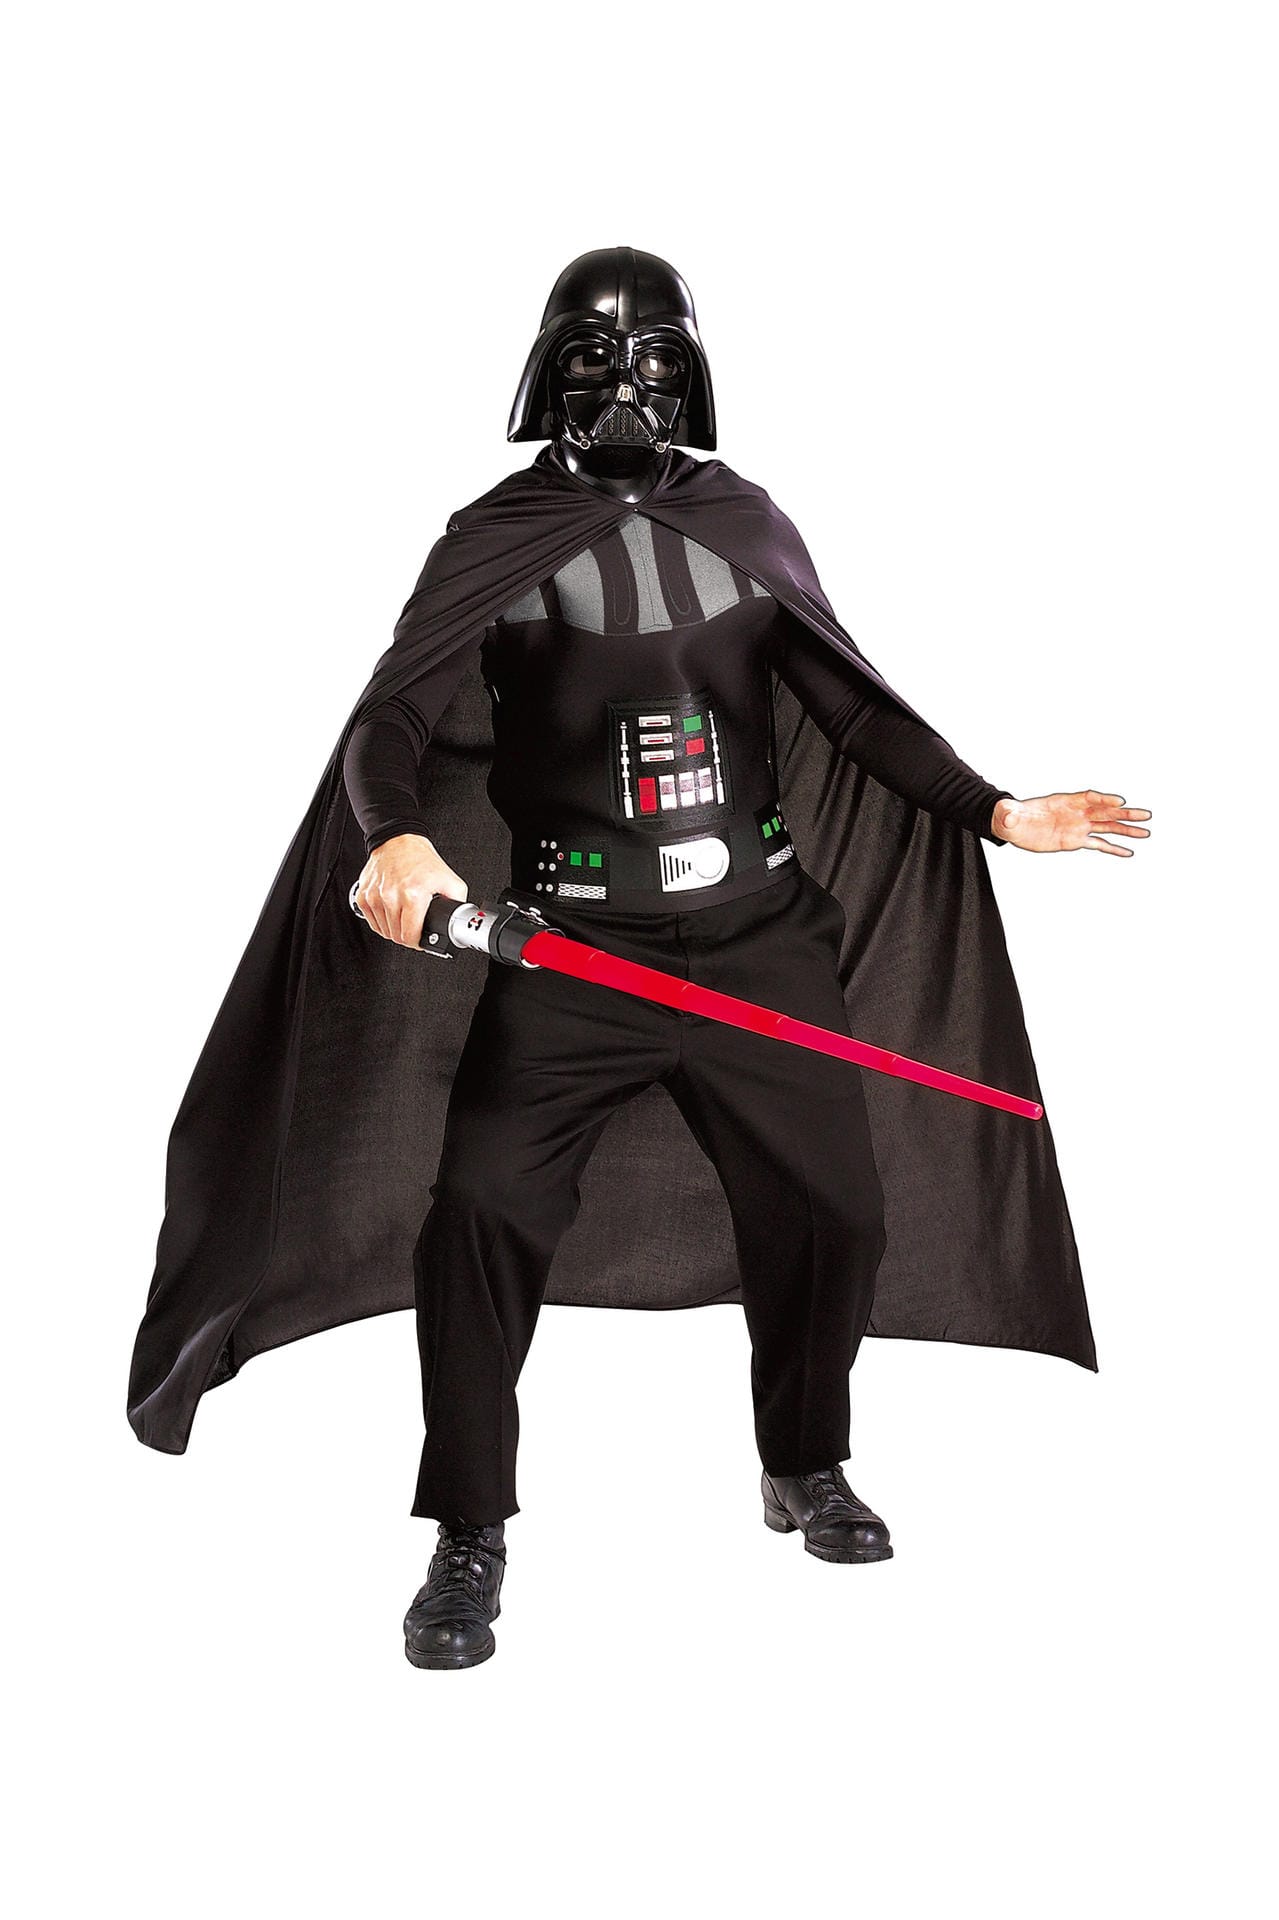 Helden und Anti-Helden aus Filmen sind beliebt – hier schwingt Darth Vader aus Star Wars sein Laserschwert.